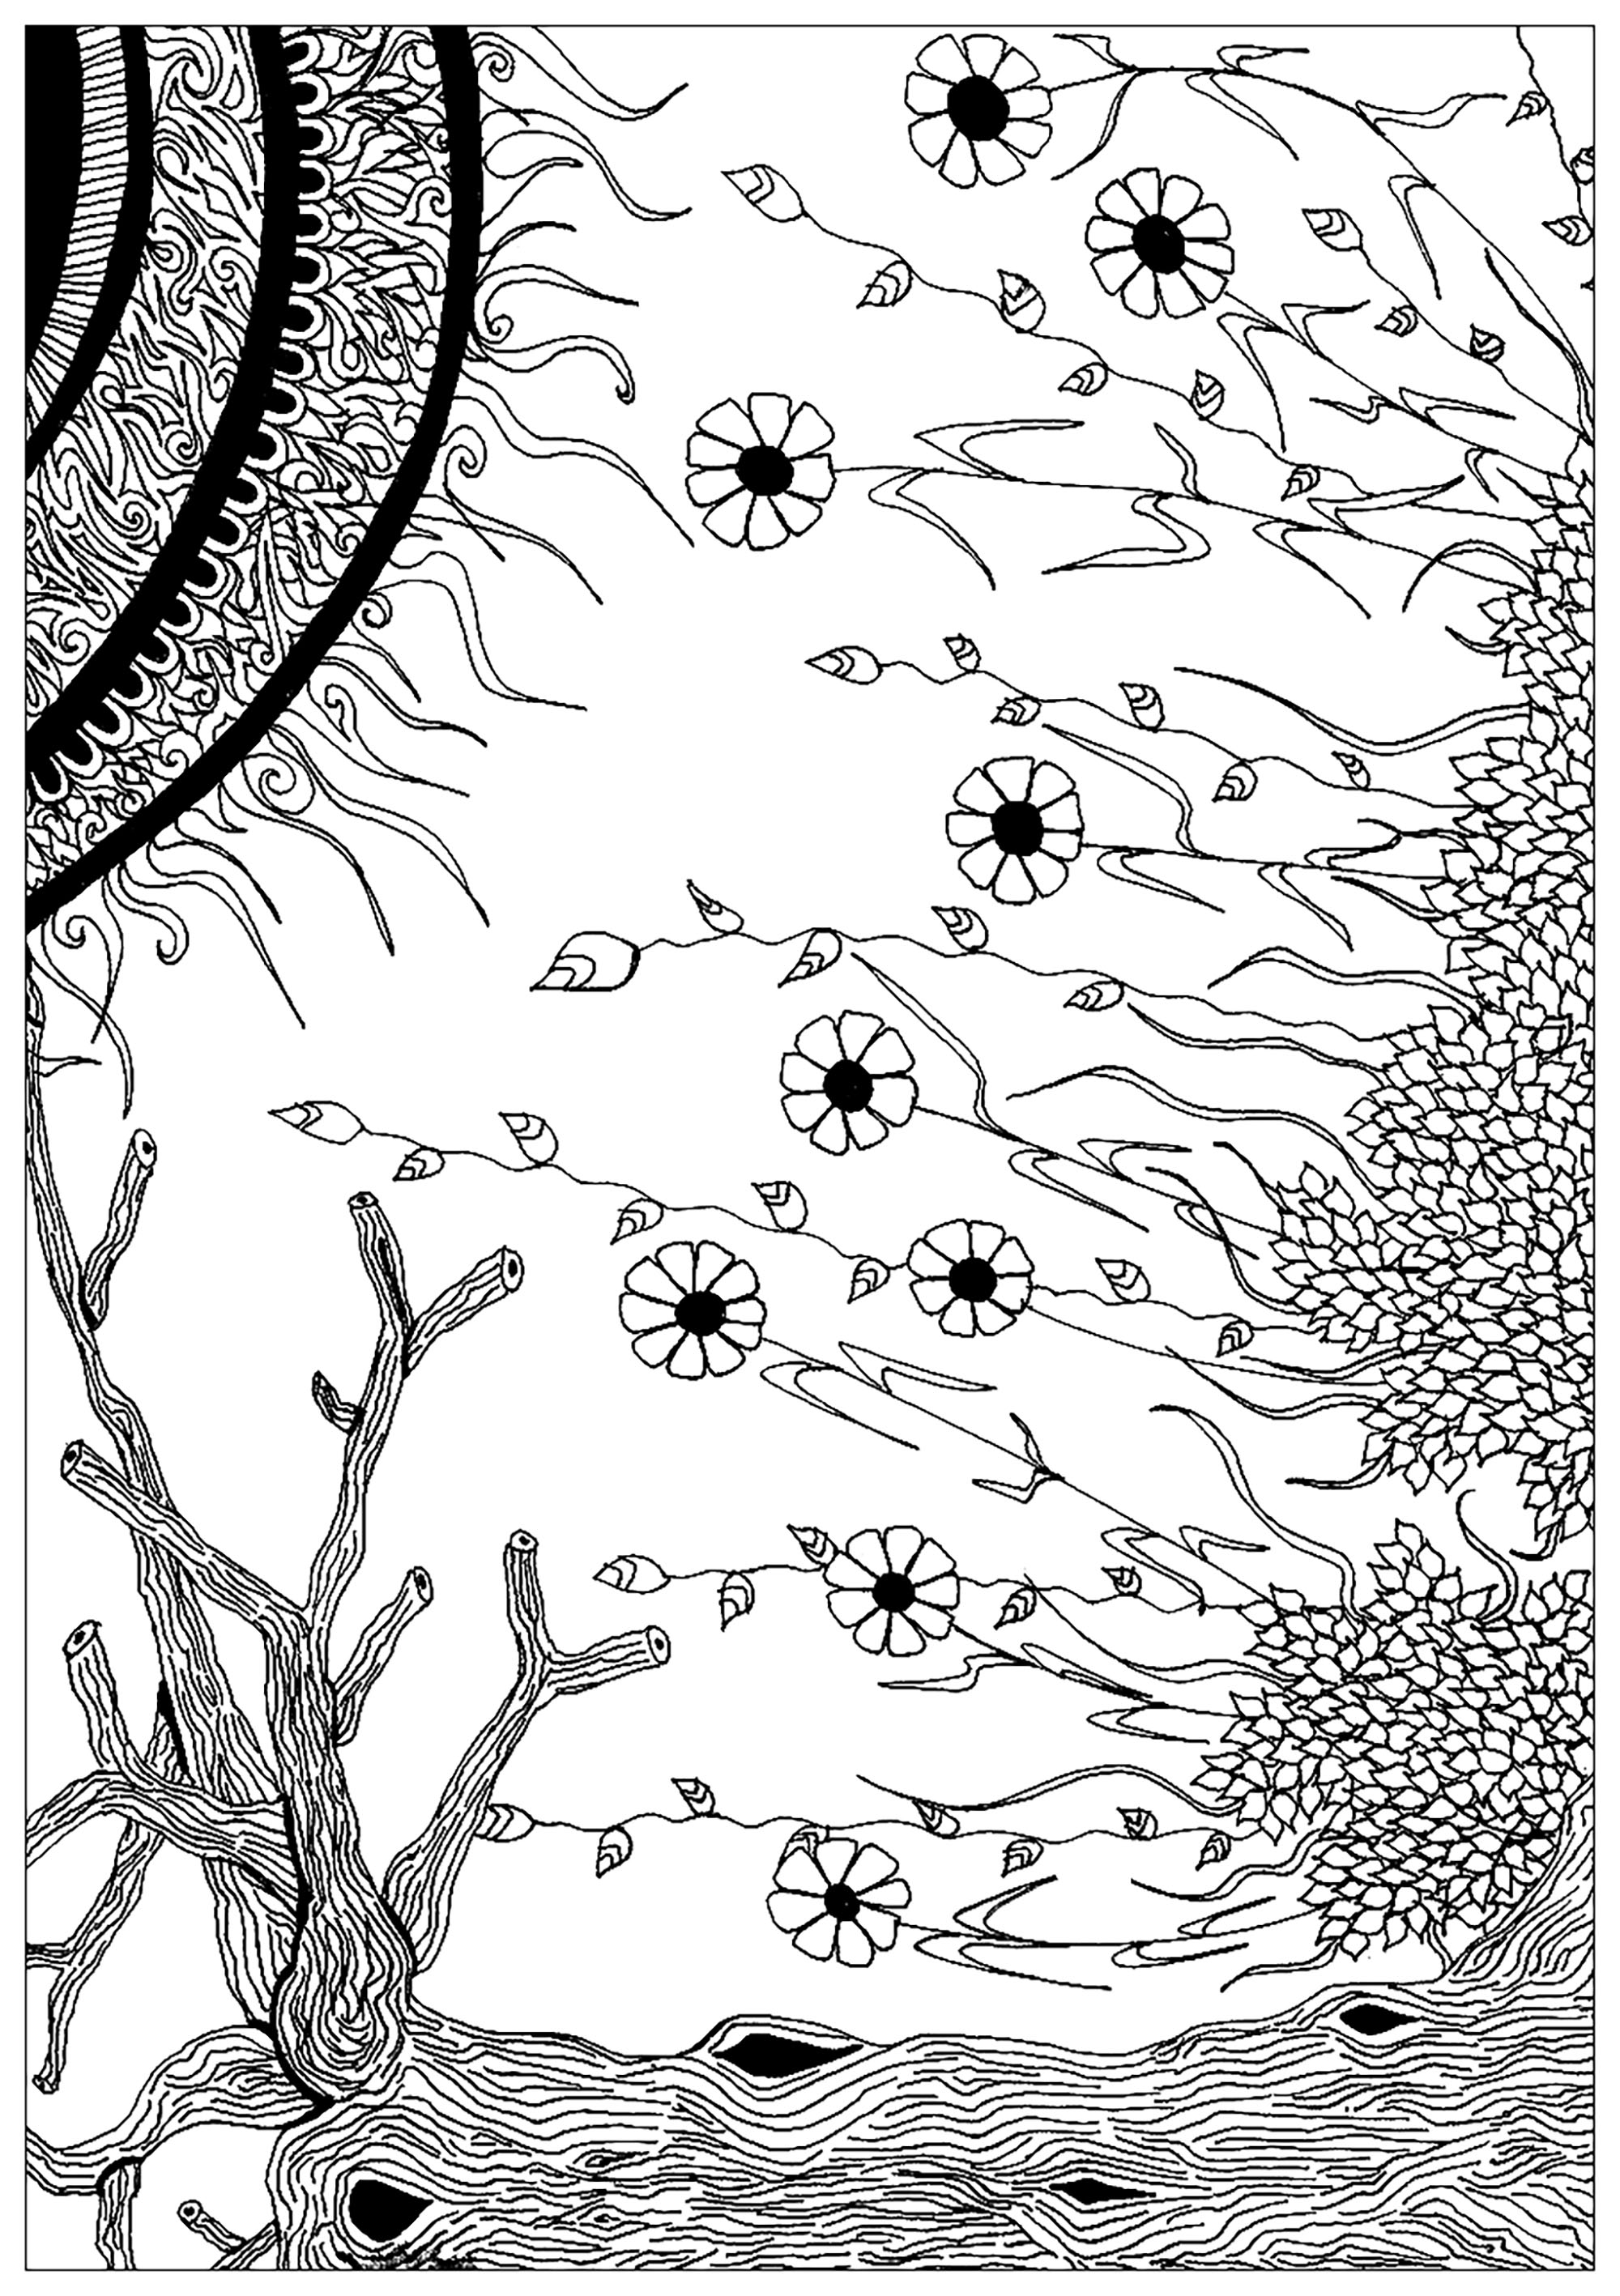 Desenho composto por elementos vegetais, representando o encontro entre um espermatozoide e um óvulo, Artista : Elanise Art